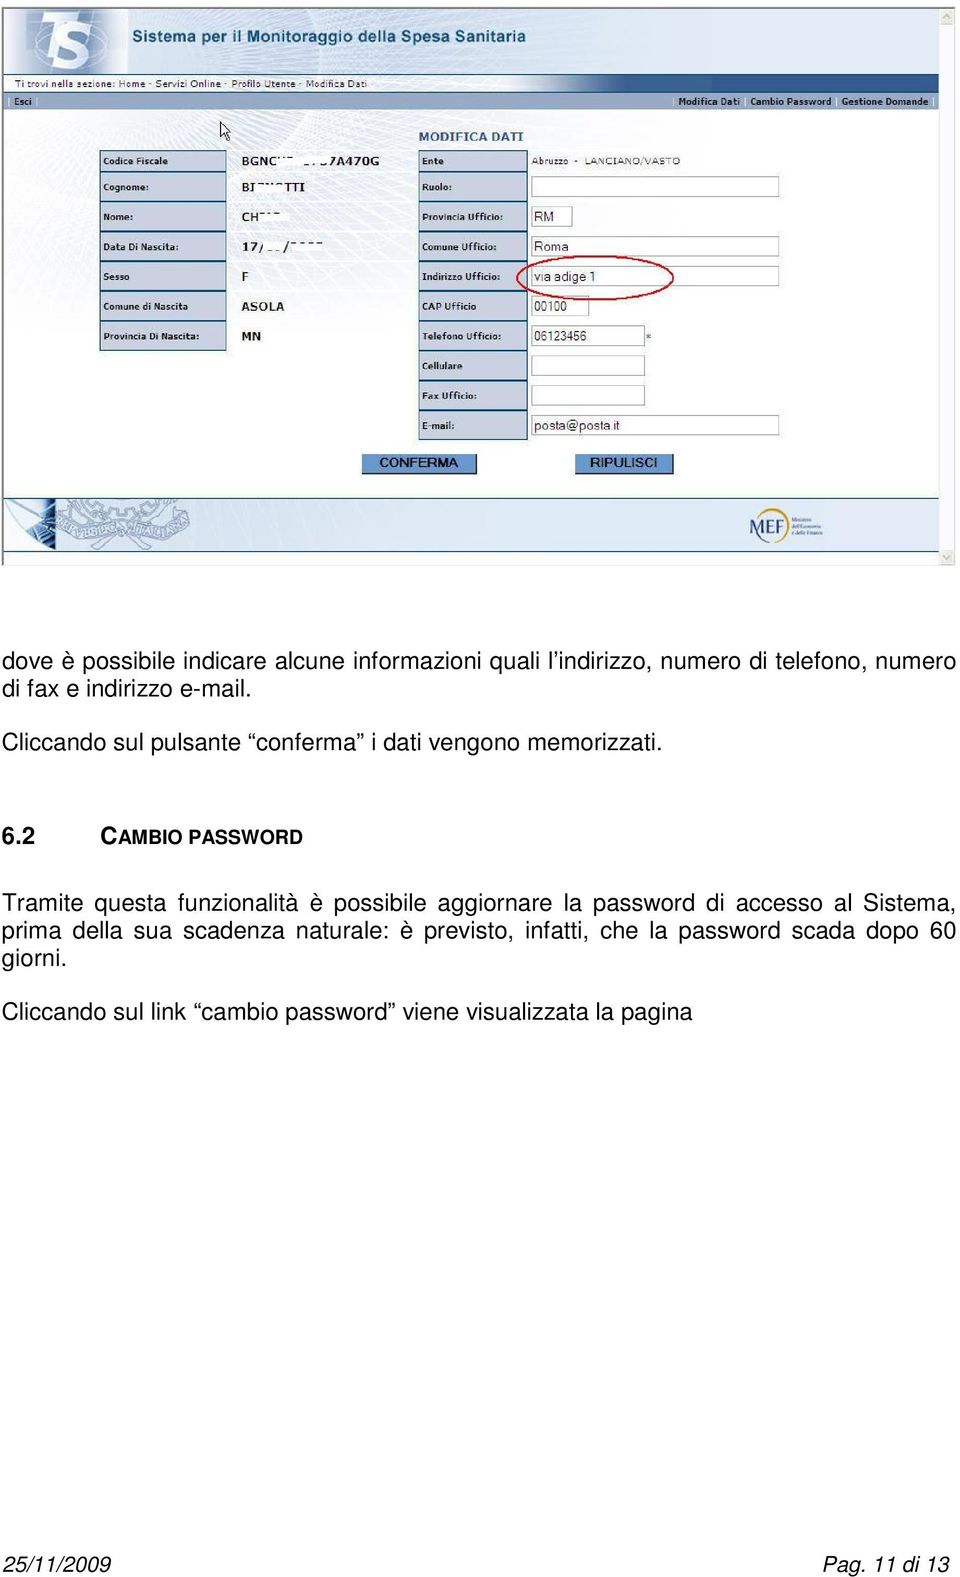 2 CAMBIO PASSWORD Tramite questa funzionalità è possibile aggiornare la password di accesso al Sistema, prima della